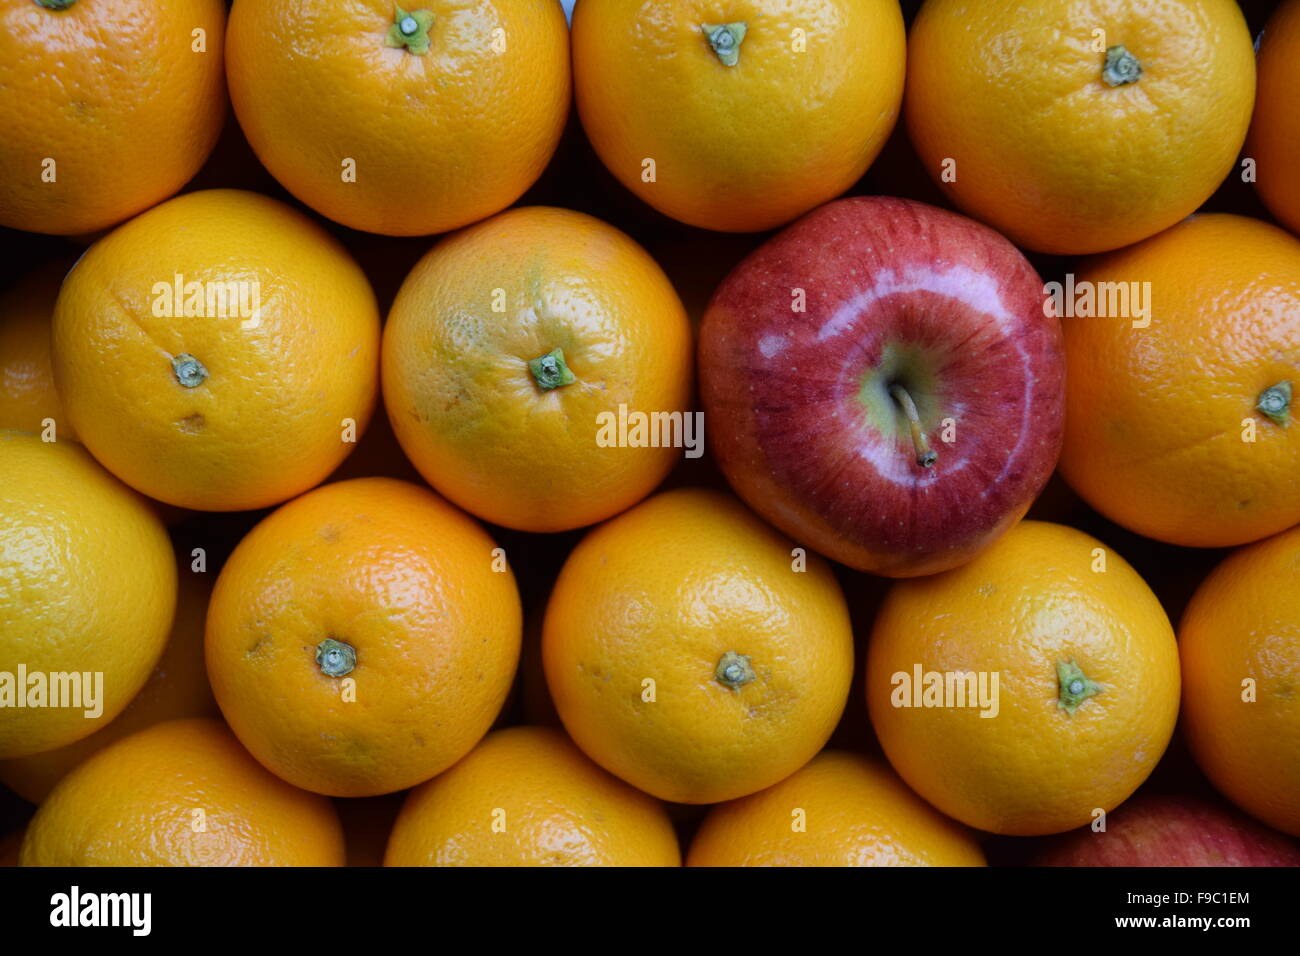 Apples versus oranges. Stock Photo